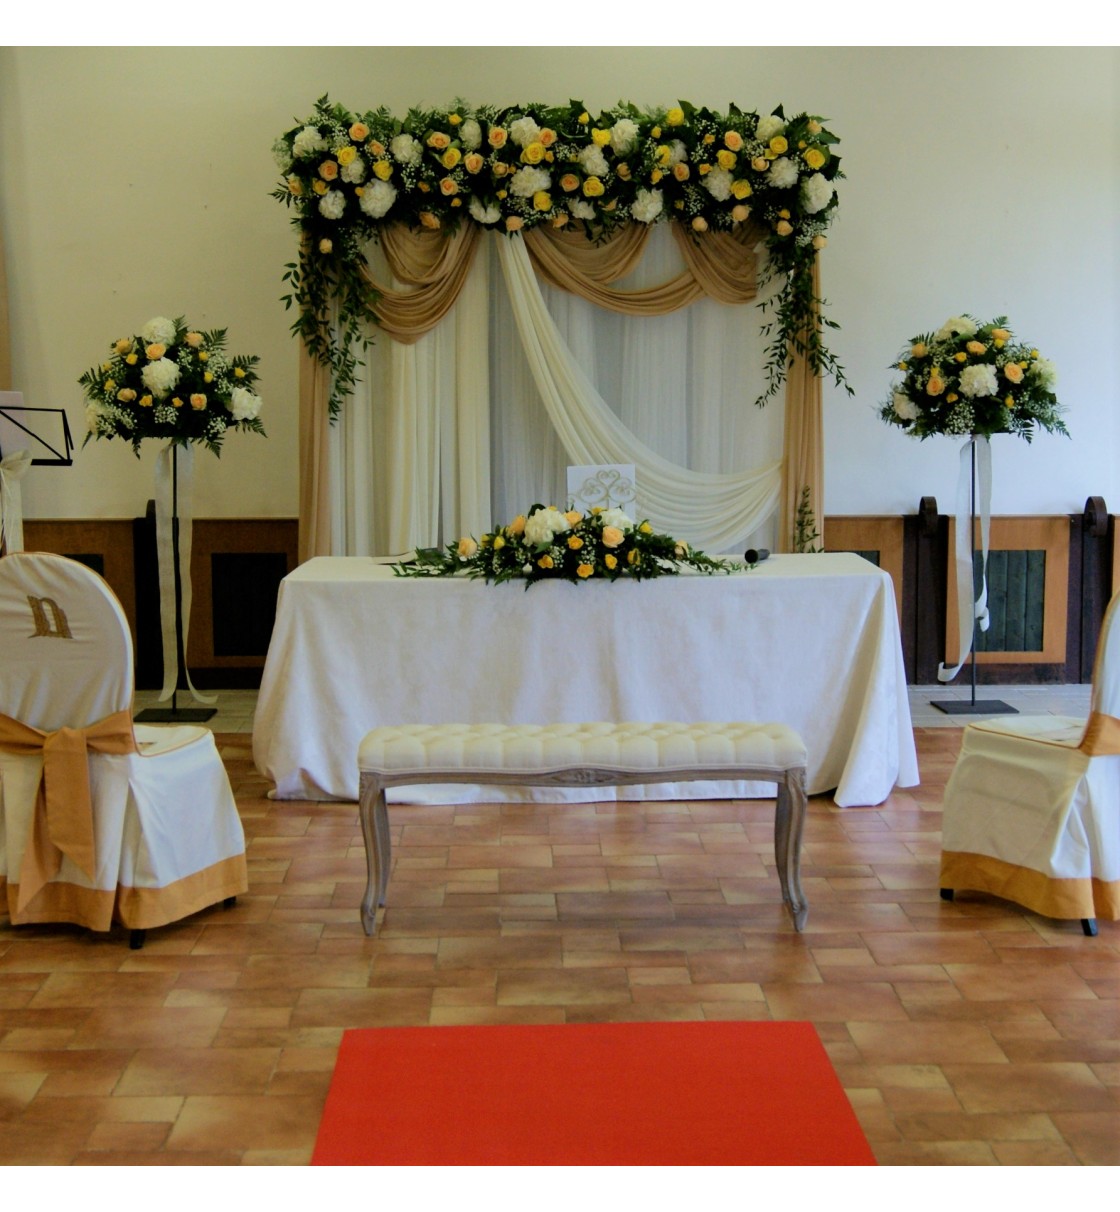 Decoración de boda civil con flores con arco floral y telas